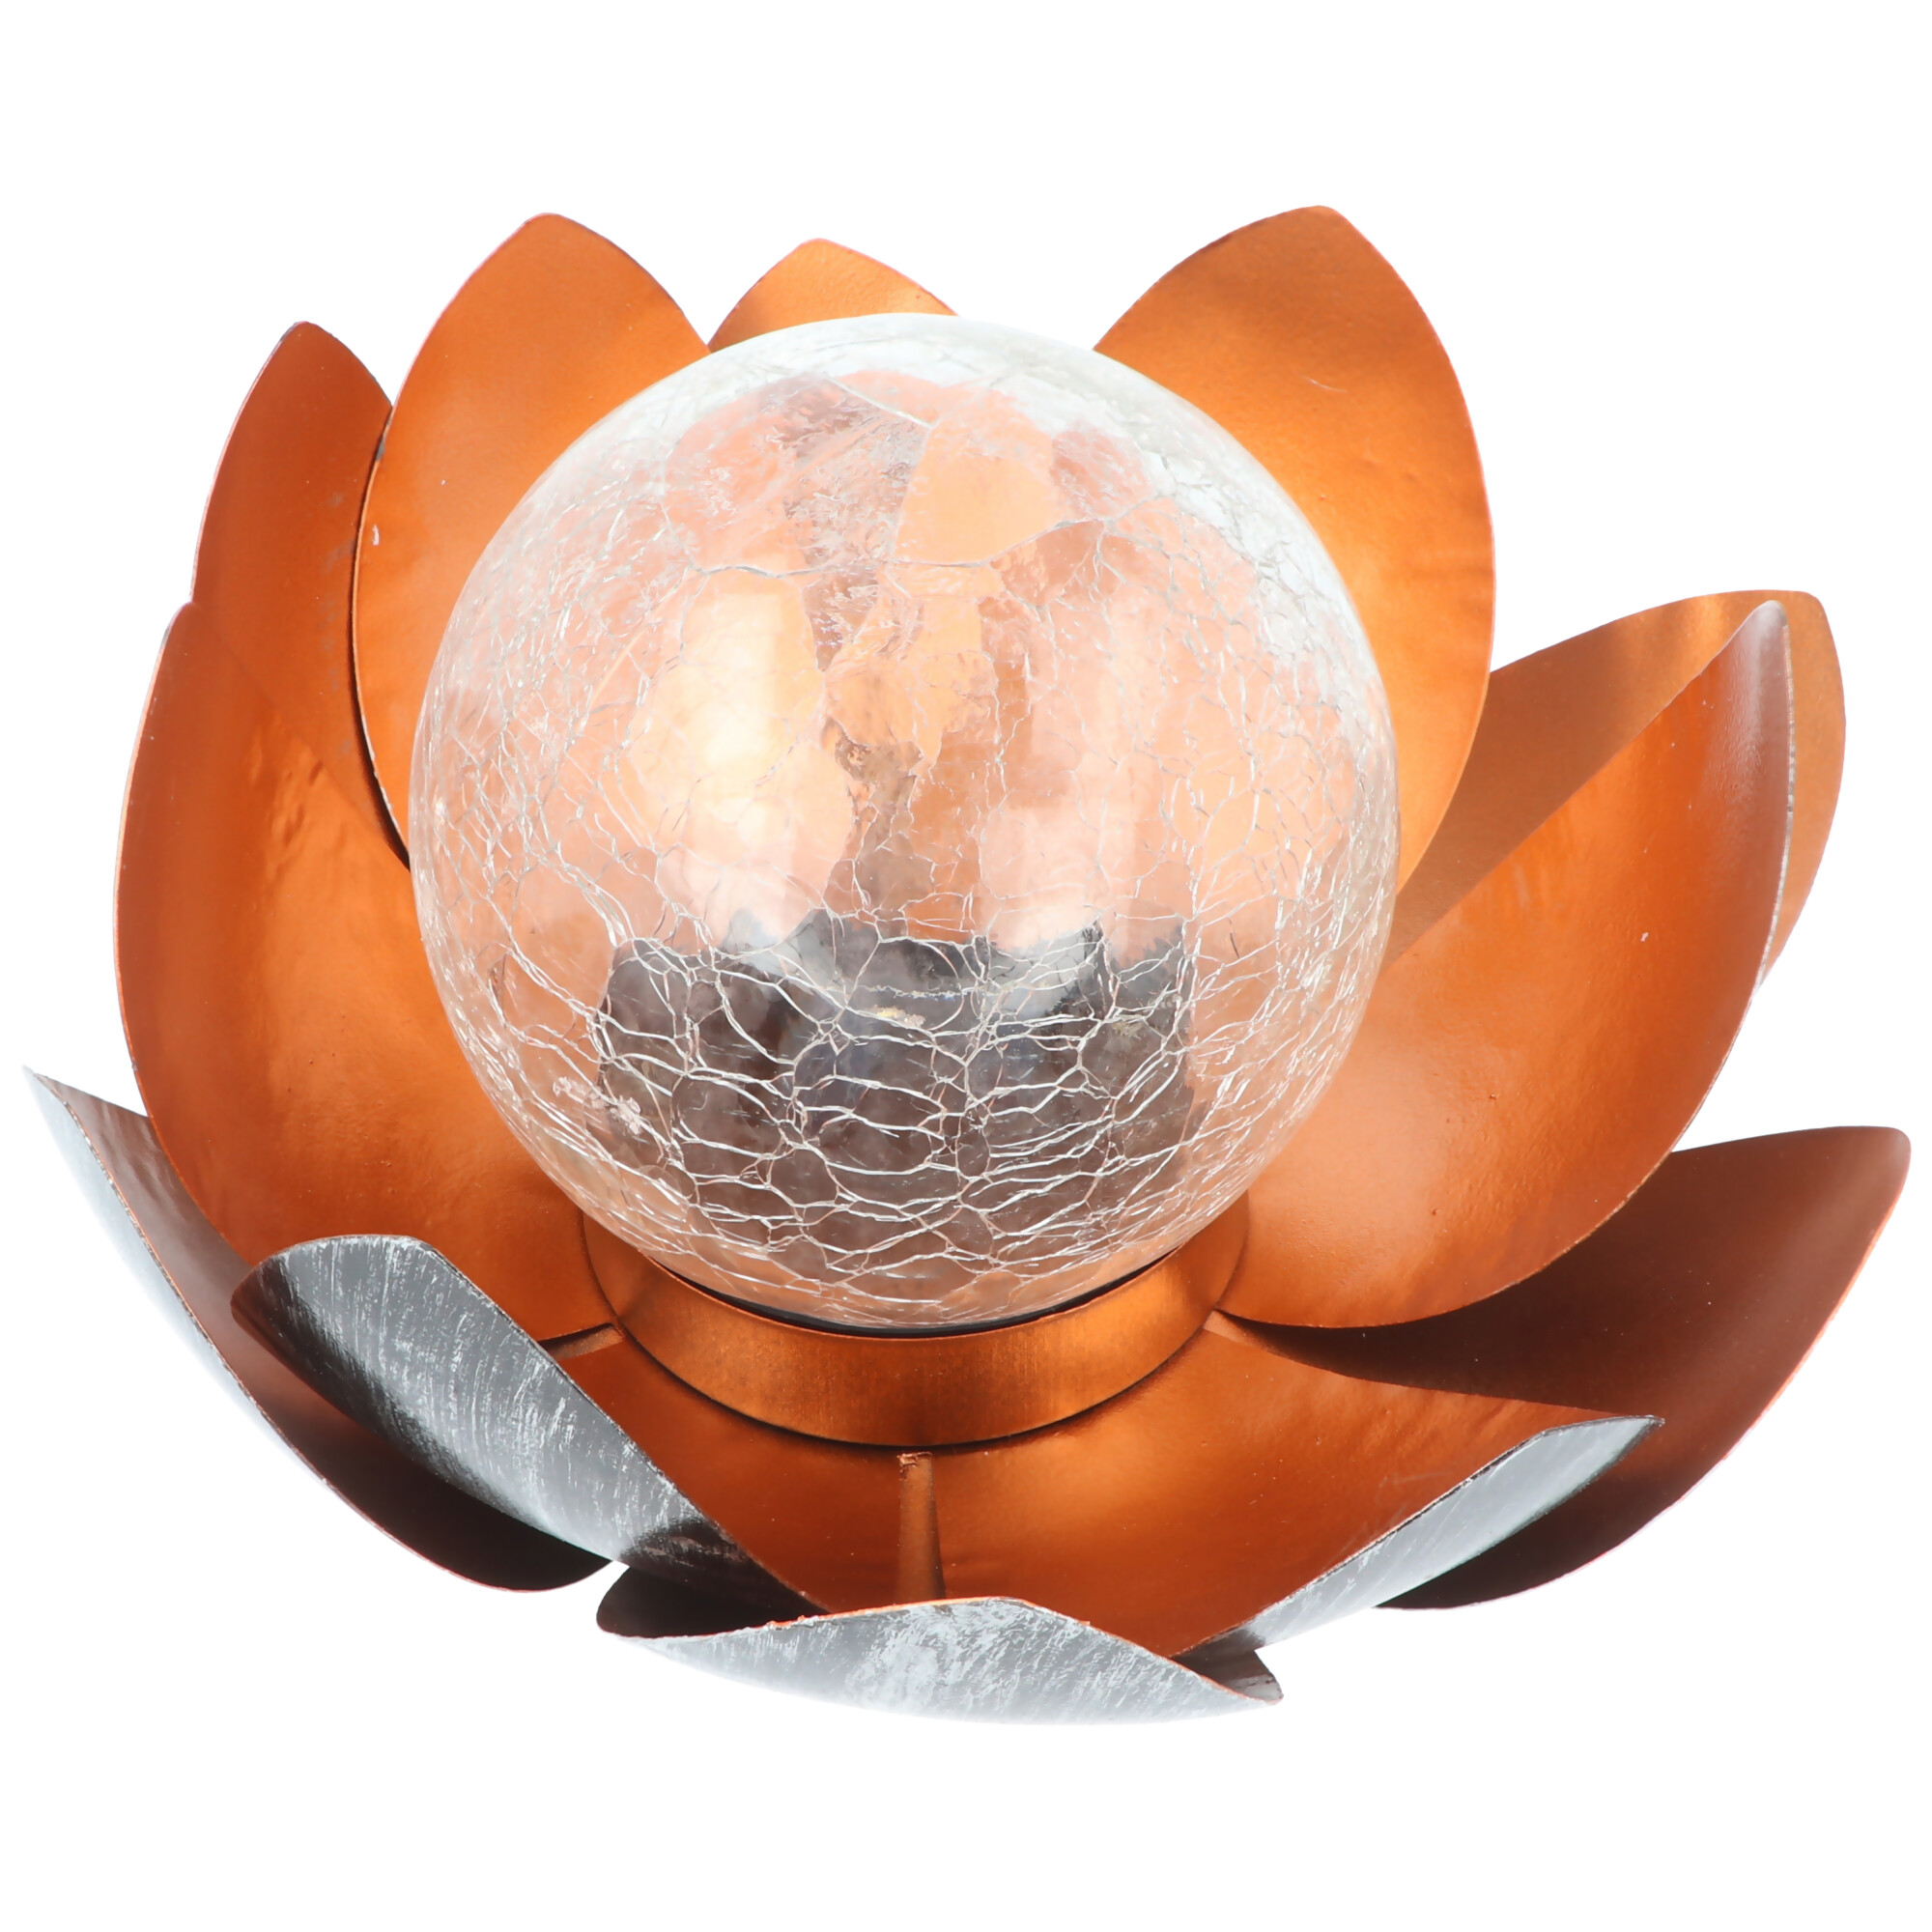 2x Dekorative Solar Lotusblüte aus Metall mit Glaskugel - angenehm warmweißes Licht - traumhafte Lichteffekte - Bruchglasoptik mit 4x Ersatzakku